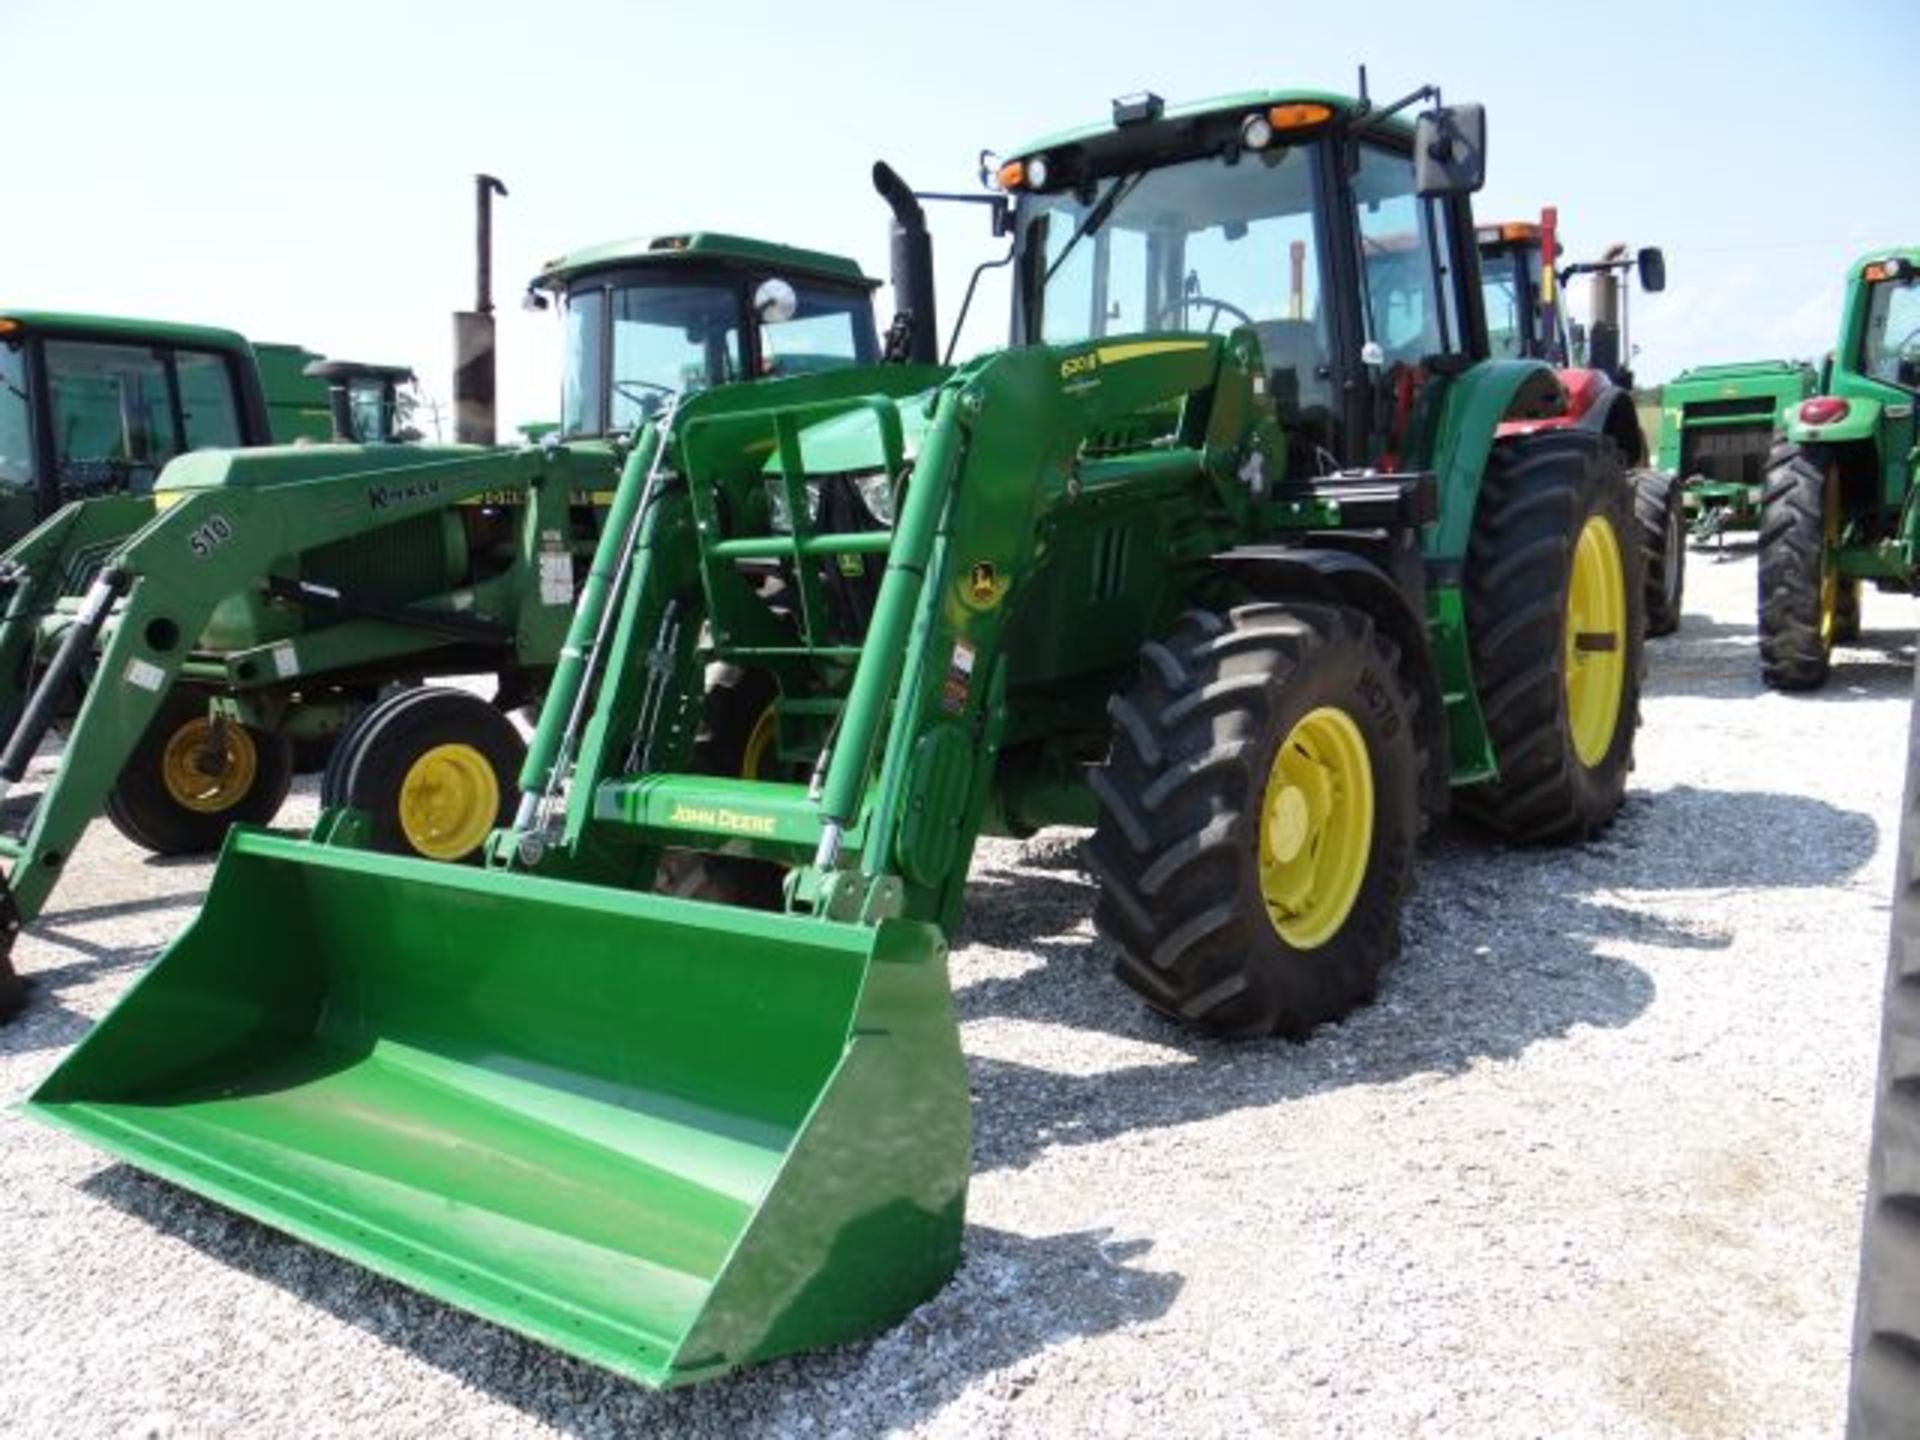 JD 6130M Tractor, 2015 #60576, 555 hrs, MFWD, 24sp PQ, Greenstar Ready, Cold Start Pkg, w/JD 602R